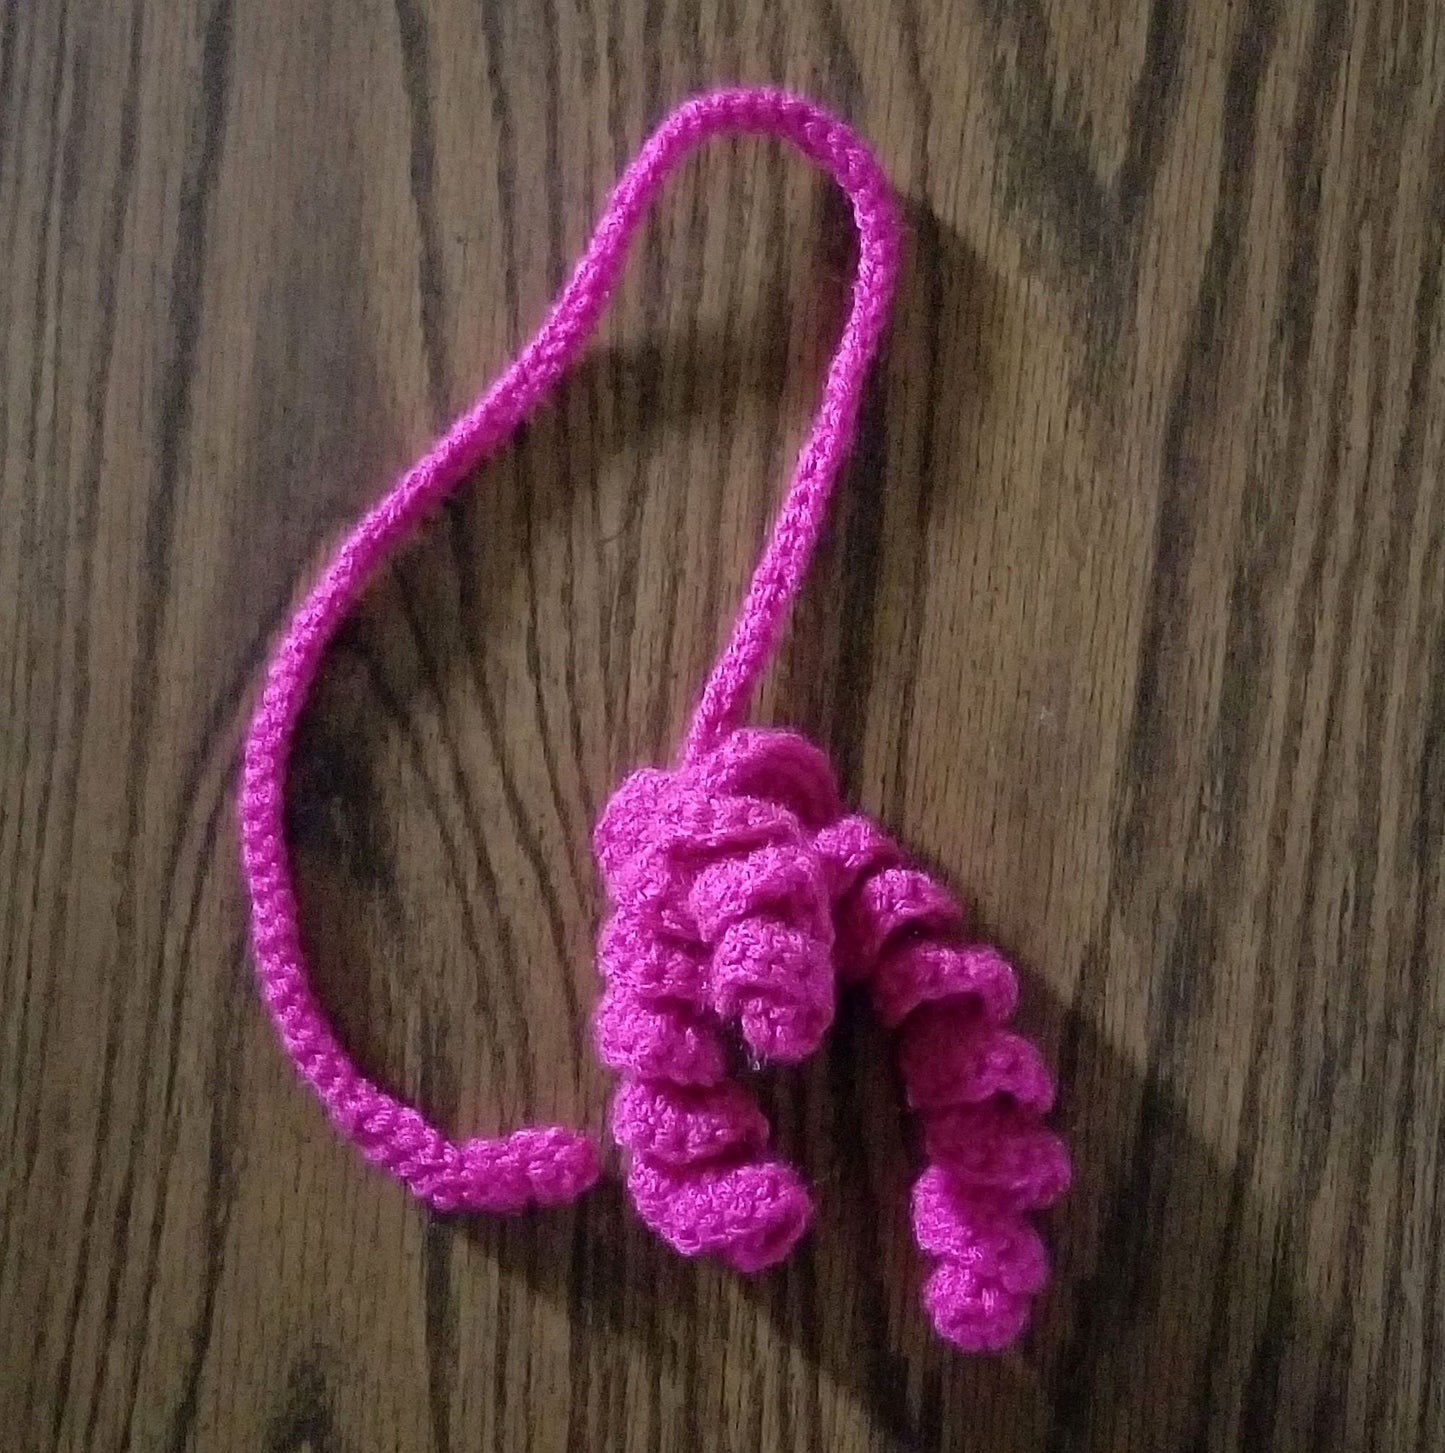 Doorknob Cat Toy Crochet Pattern, PDF Digital Download